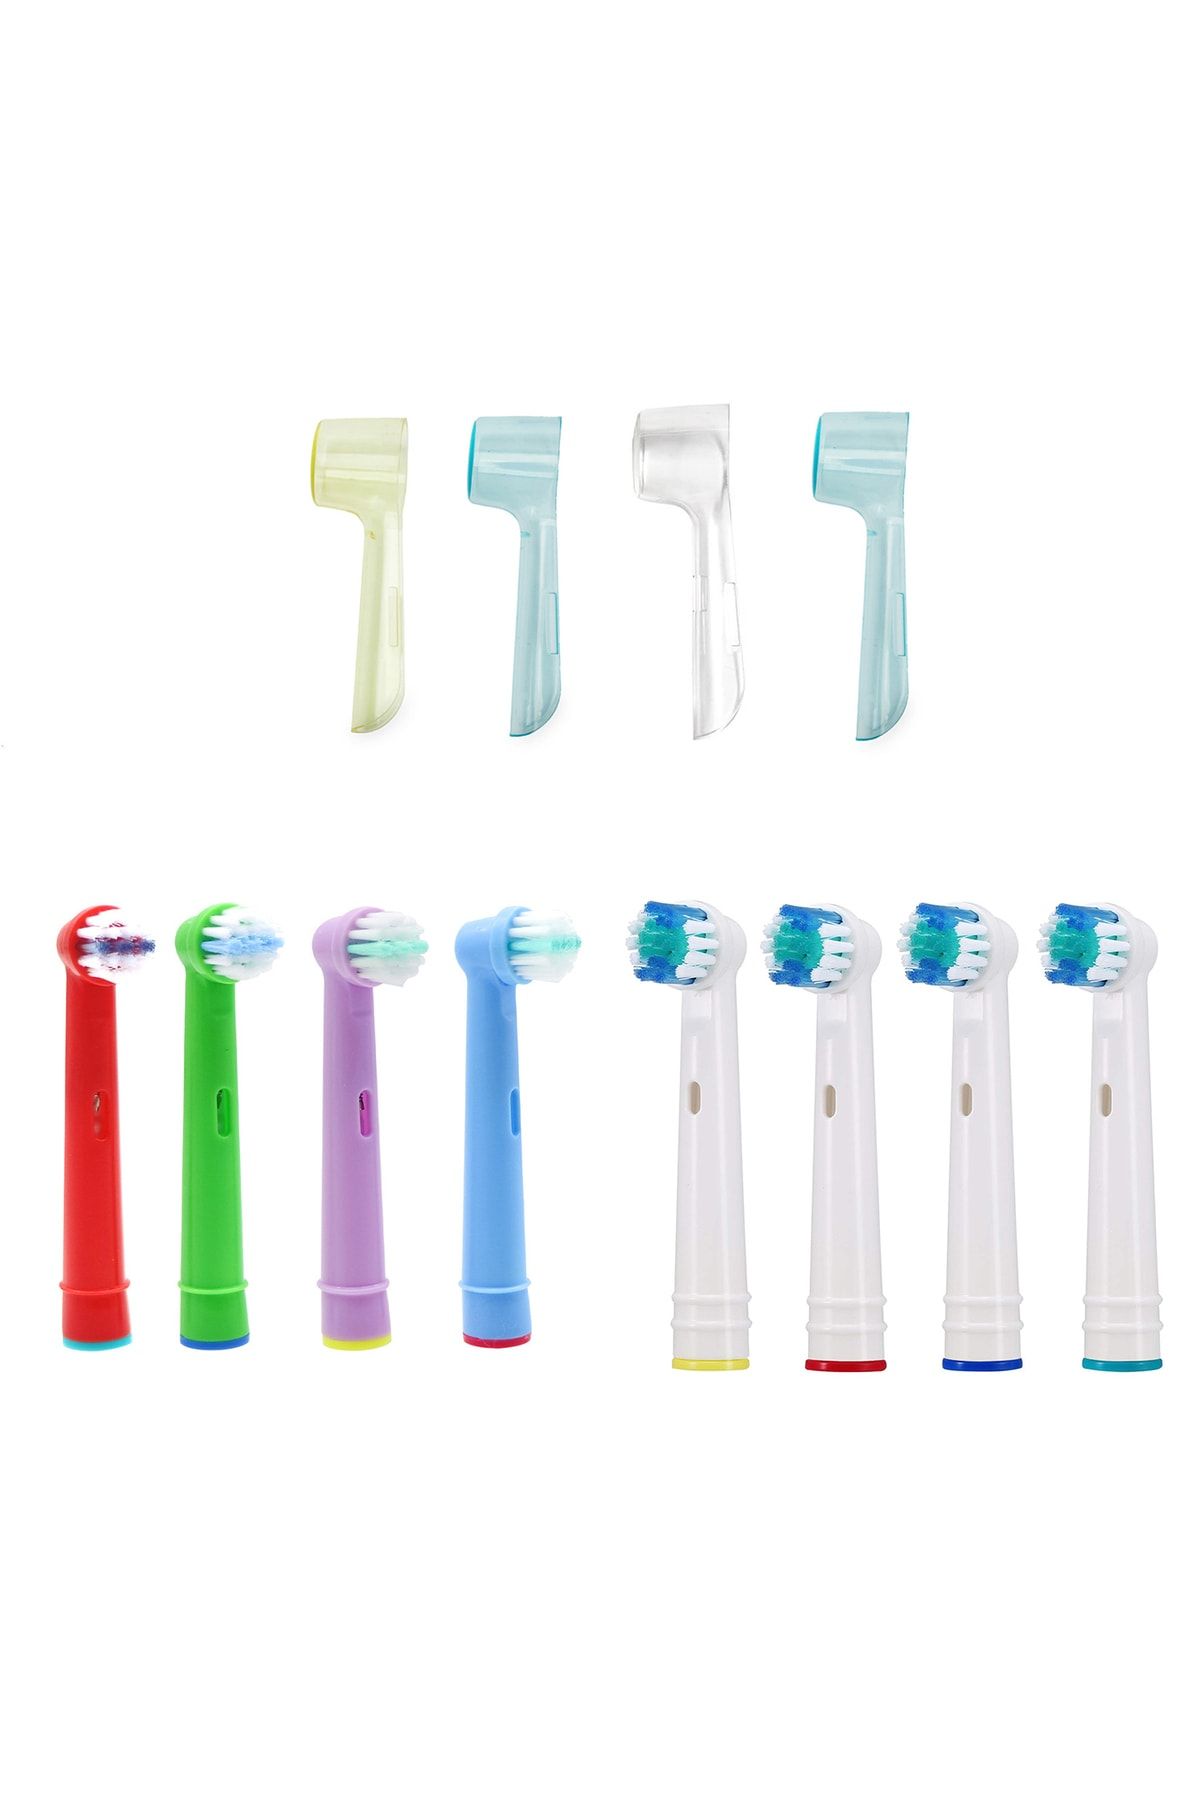 Kyver Oral B Uyumlu Diş Fırçası Yedek Başlığı 4 Yetişkin 4 Çocuk 4'lü Koruyucu Kapak Set